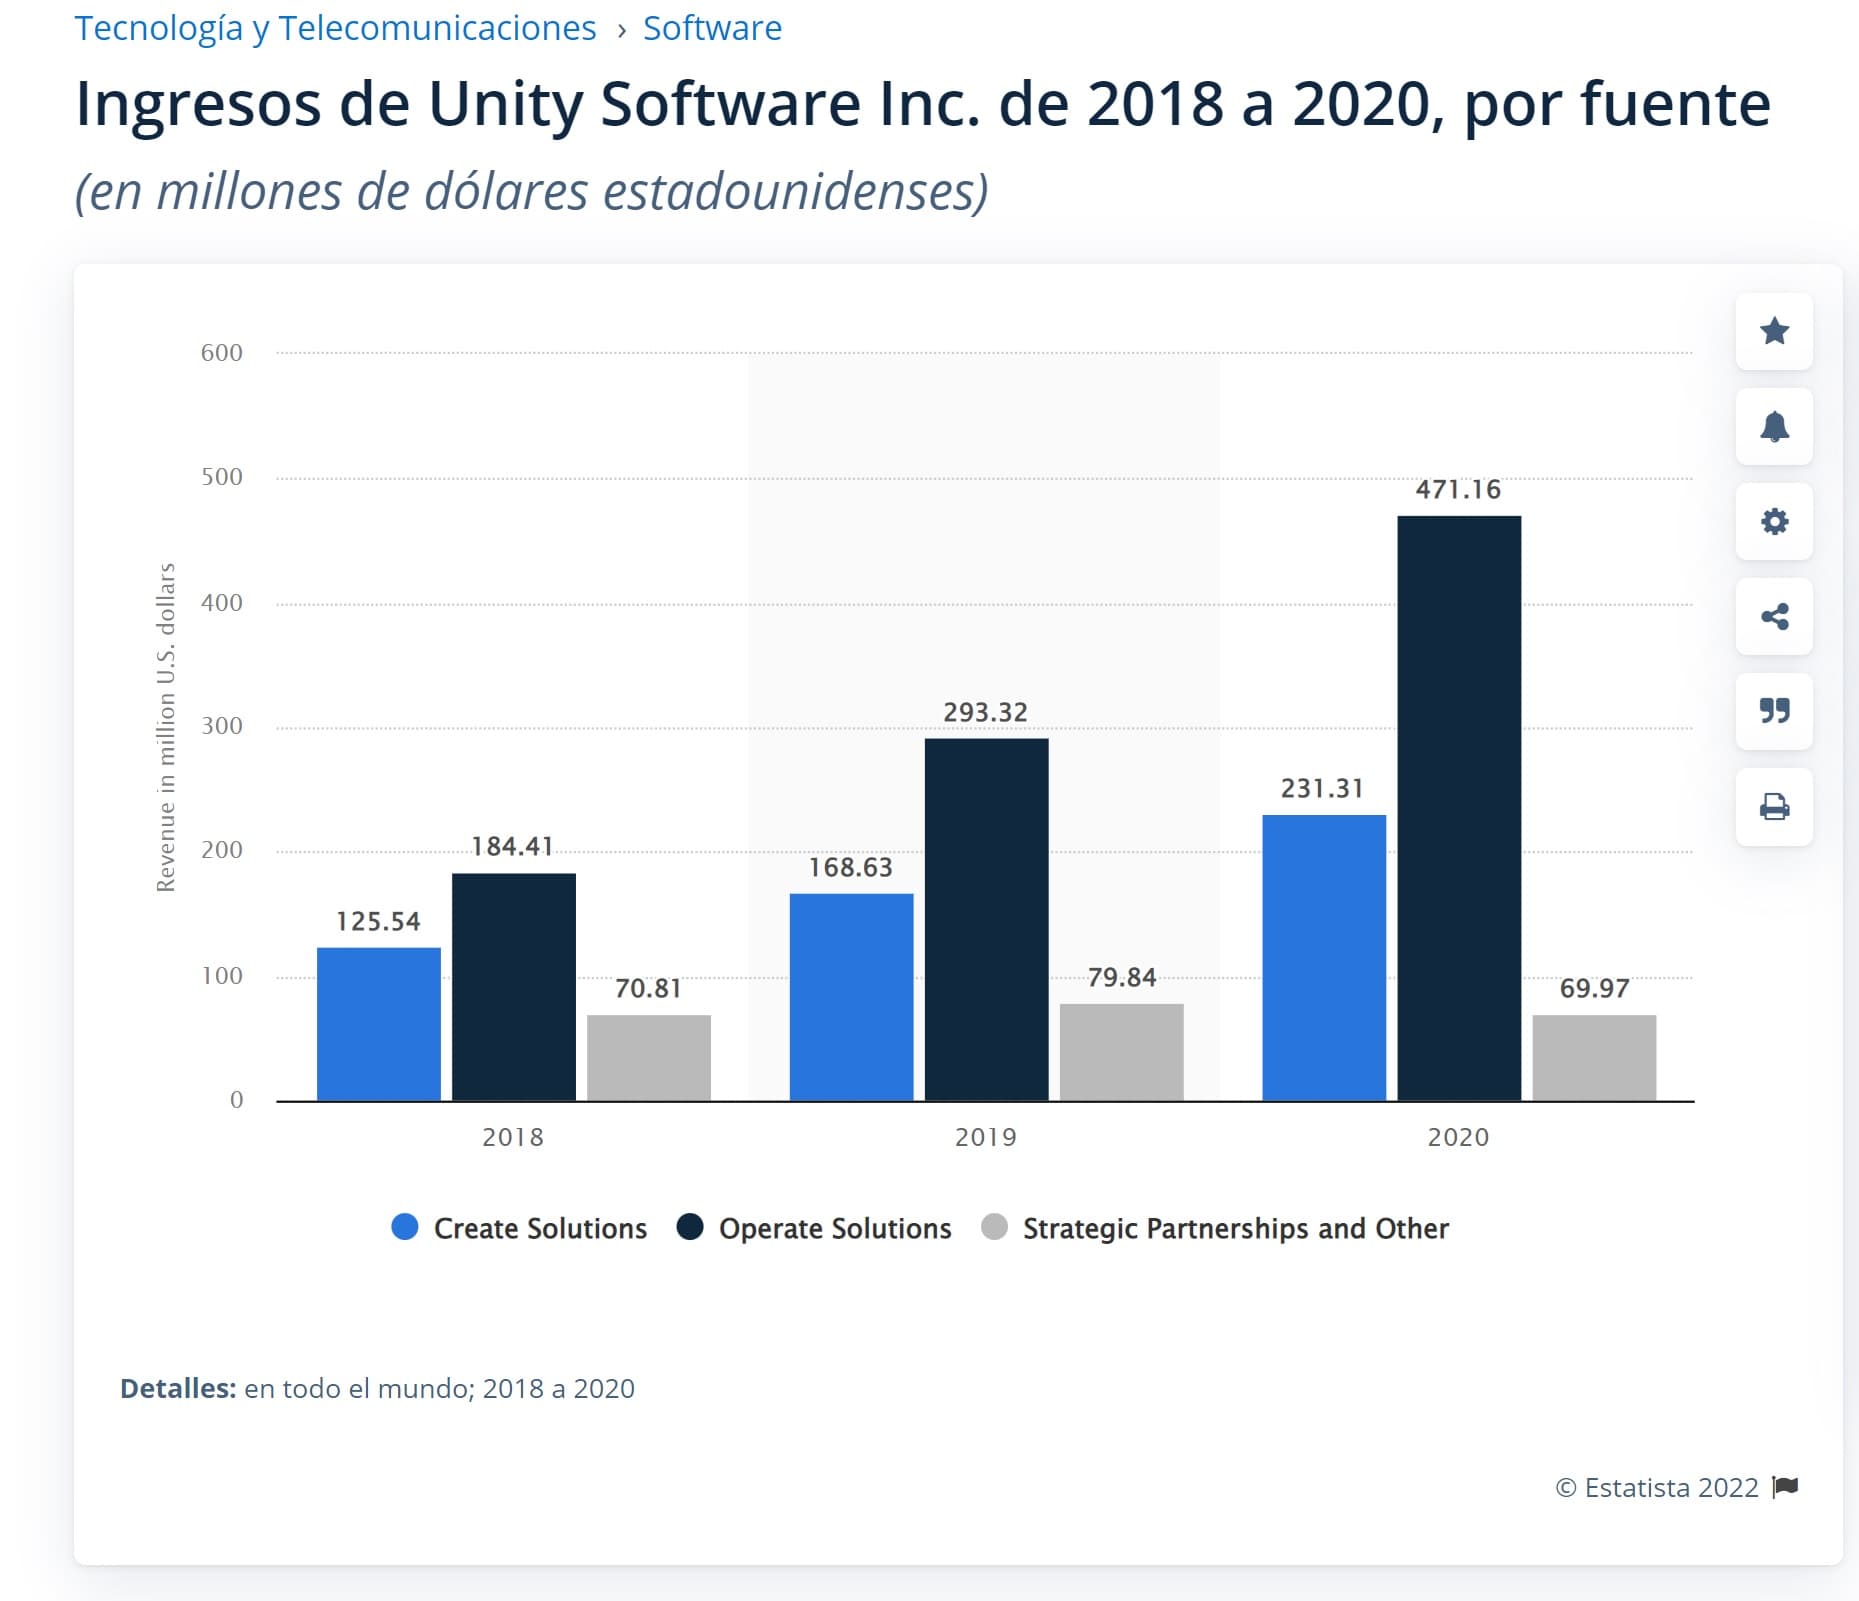 Ingresos de Unity Software (2018-2020)